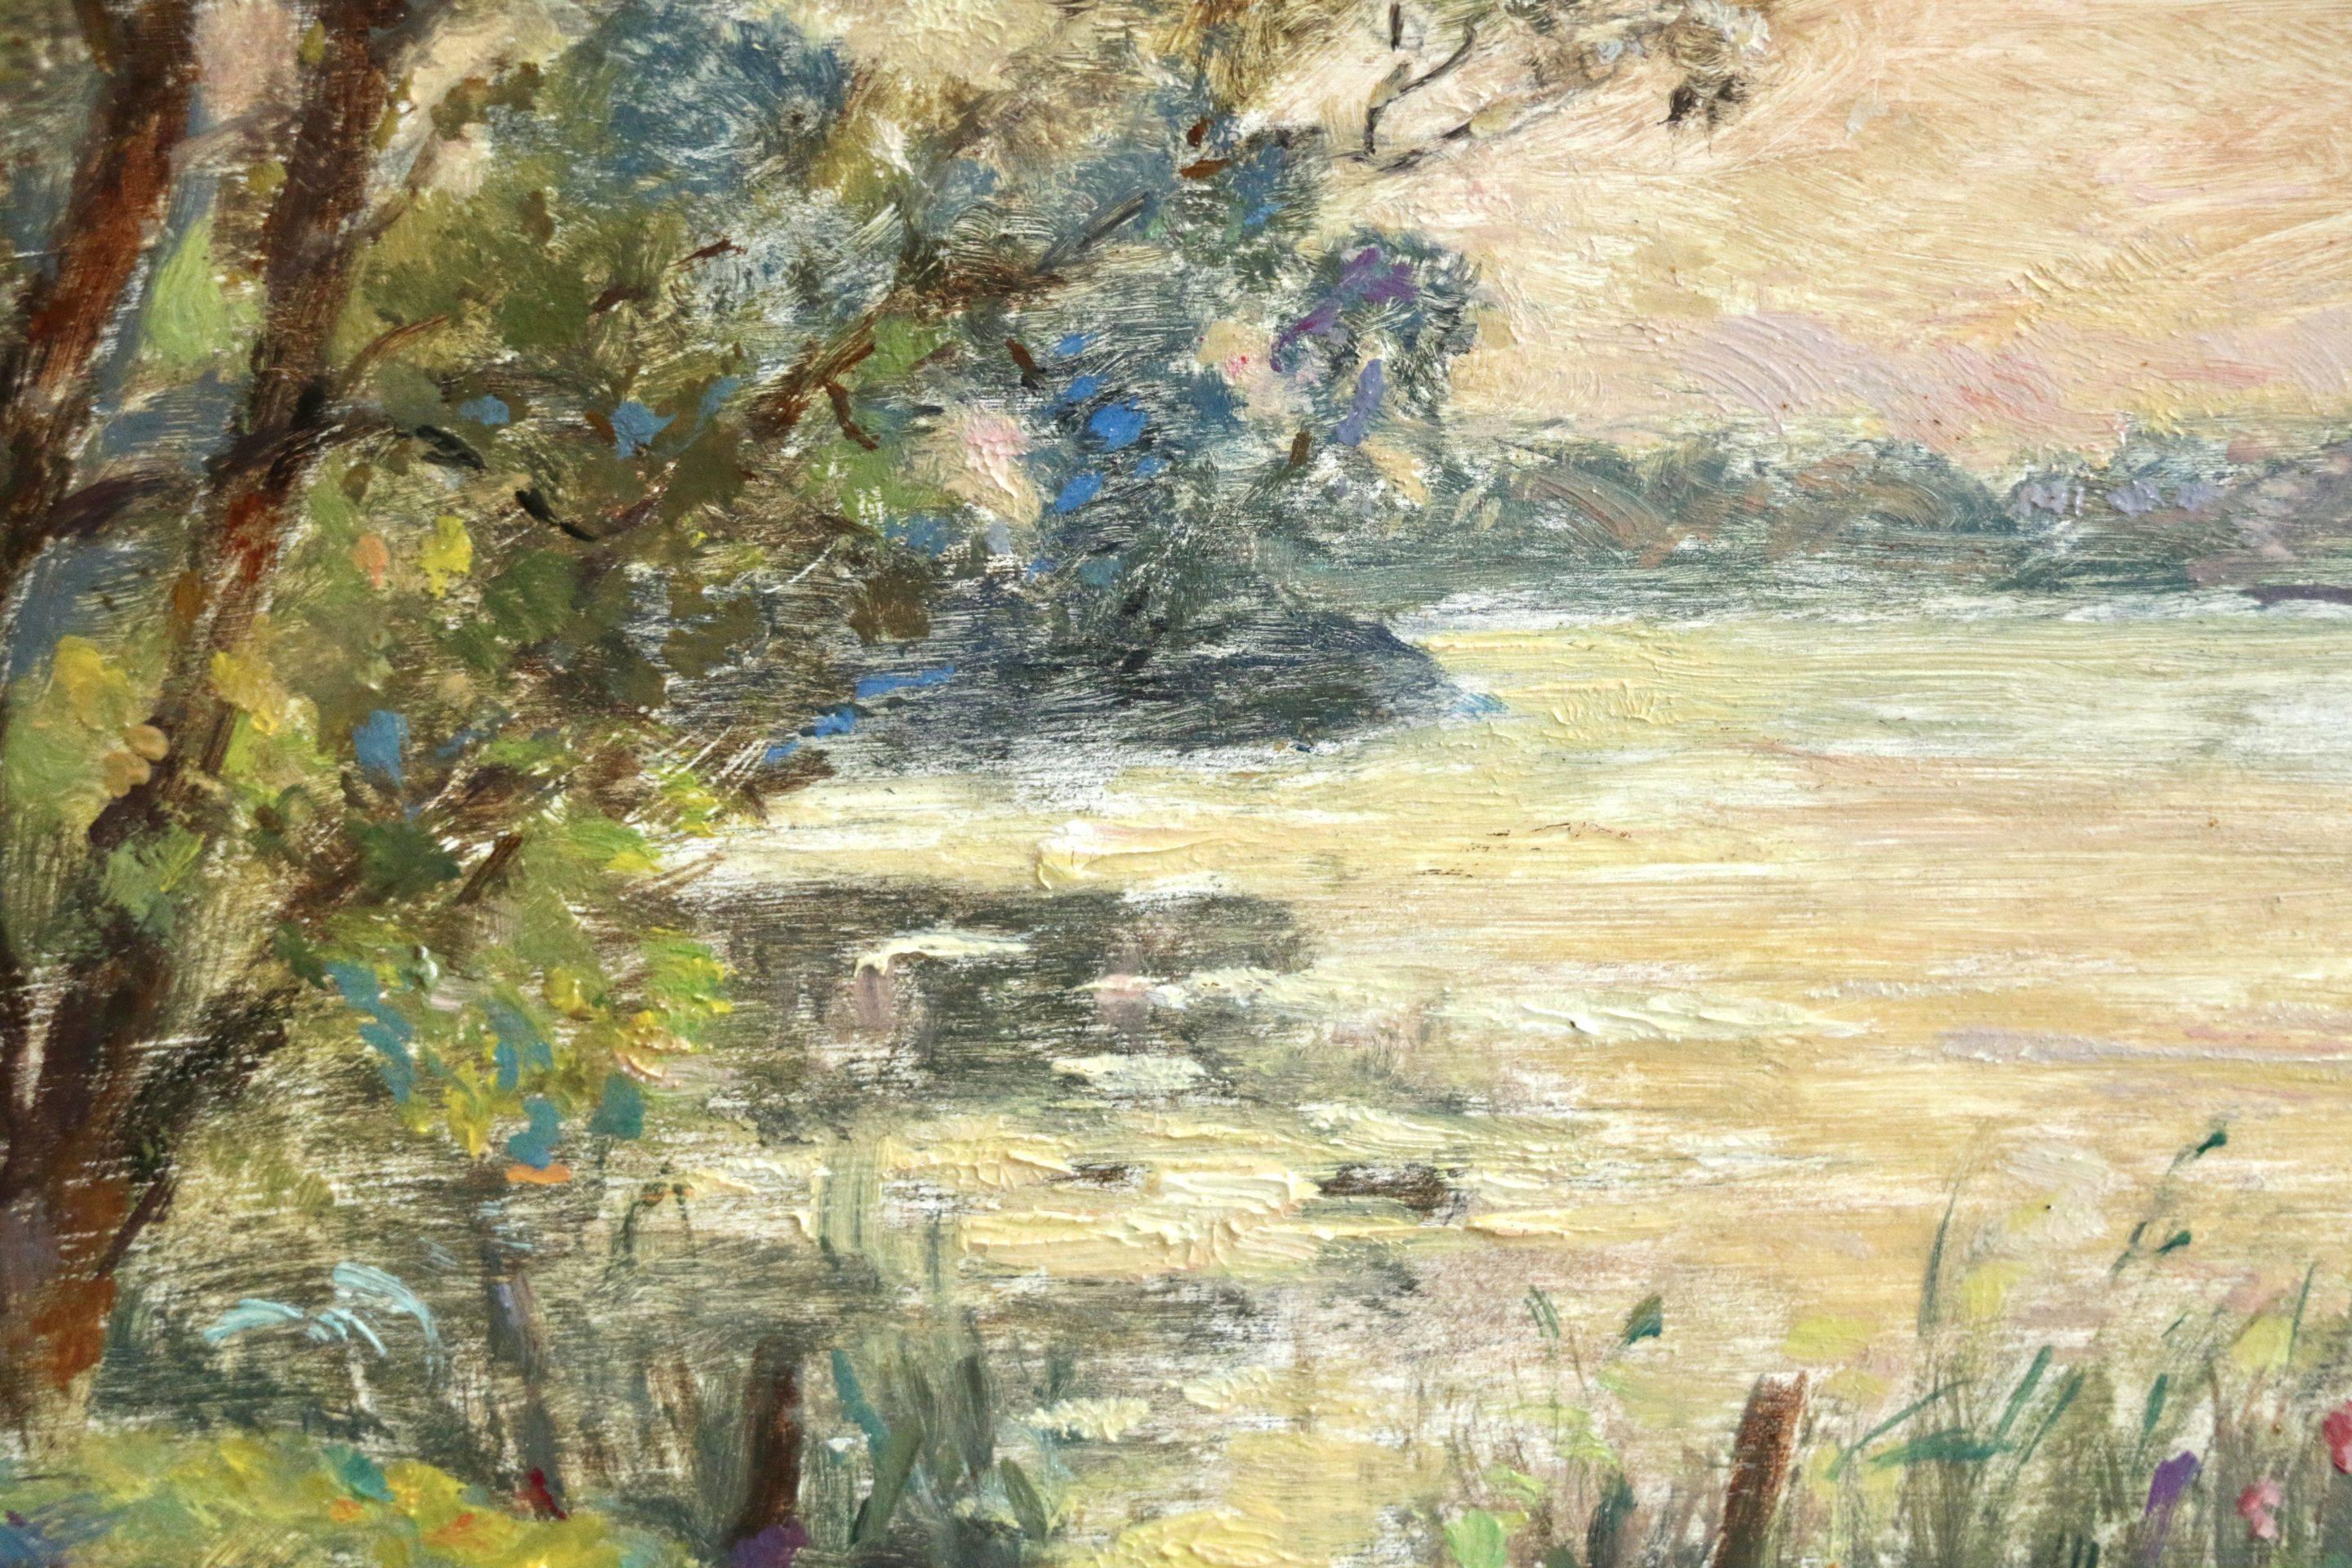 On the River - French Impressionist Oil, Boat on River Landscape - Henri Duhem For Sale 2